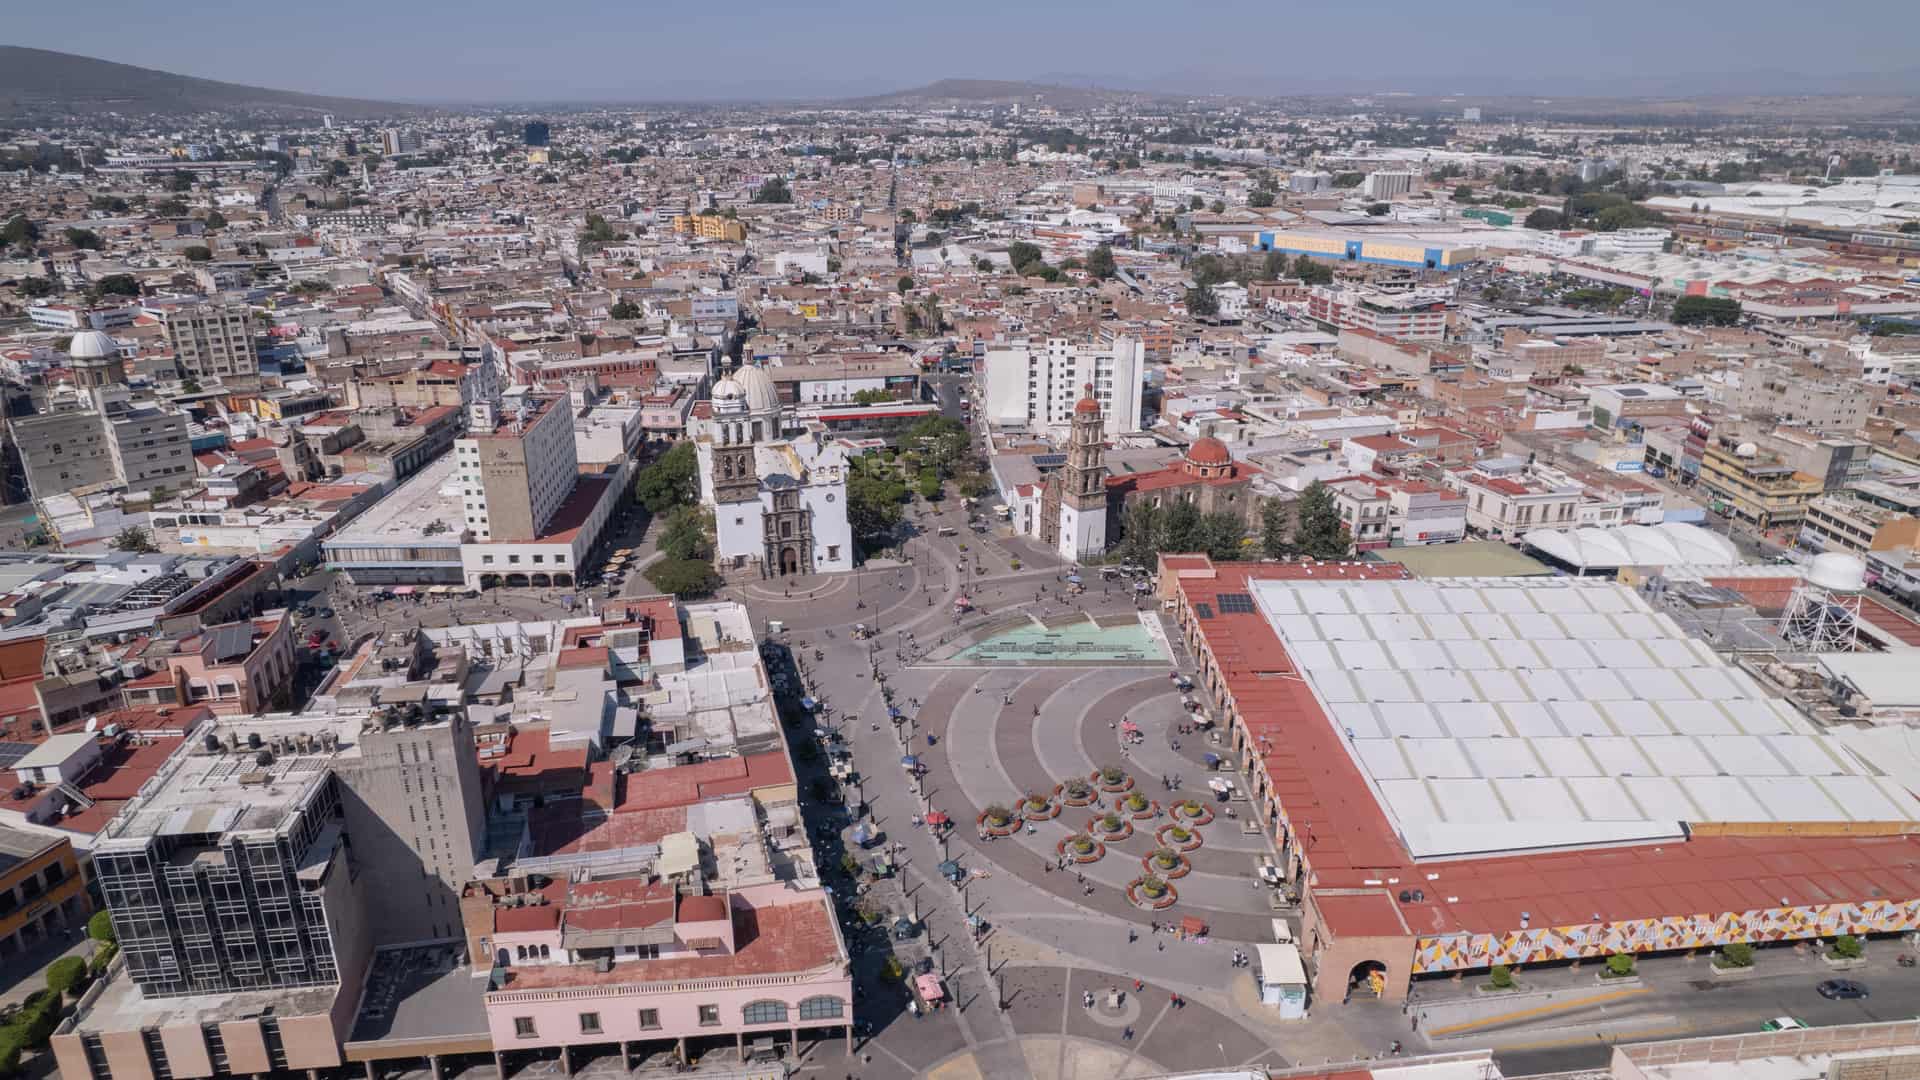 vista aerea del centro de la ciudad de irapuato donde existen algunas sucursales de la empresa izzi